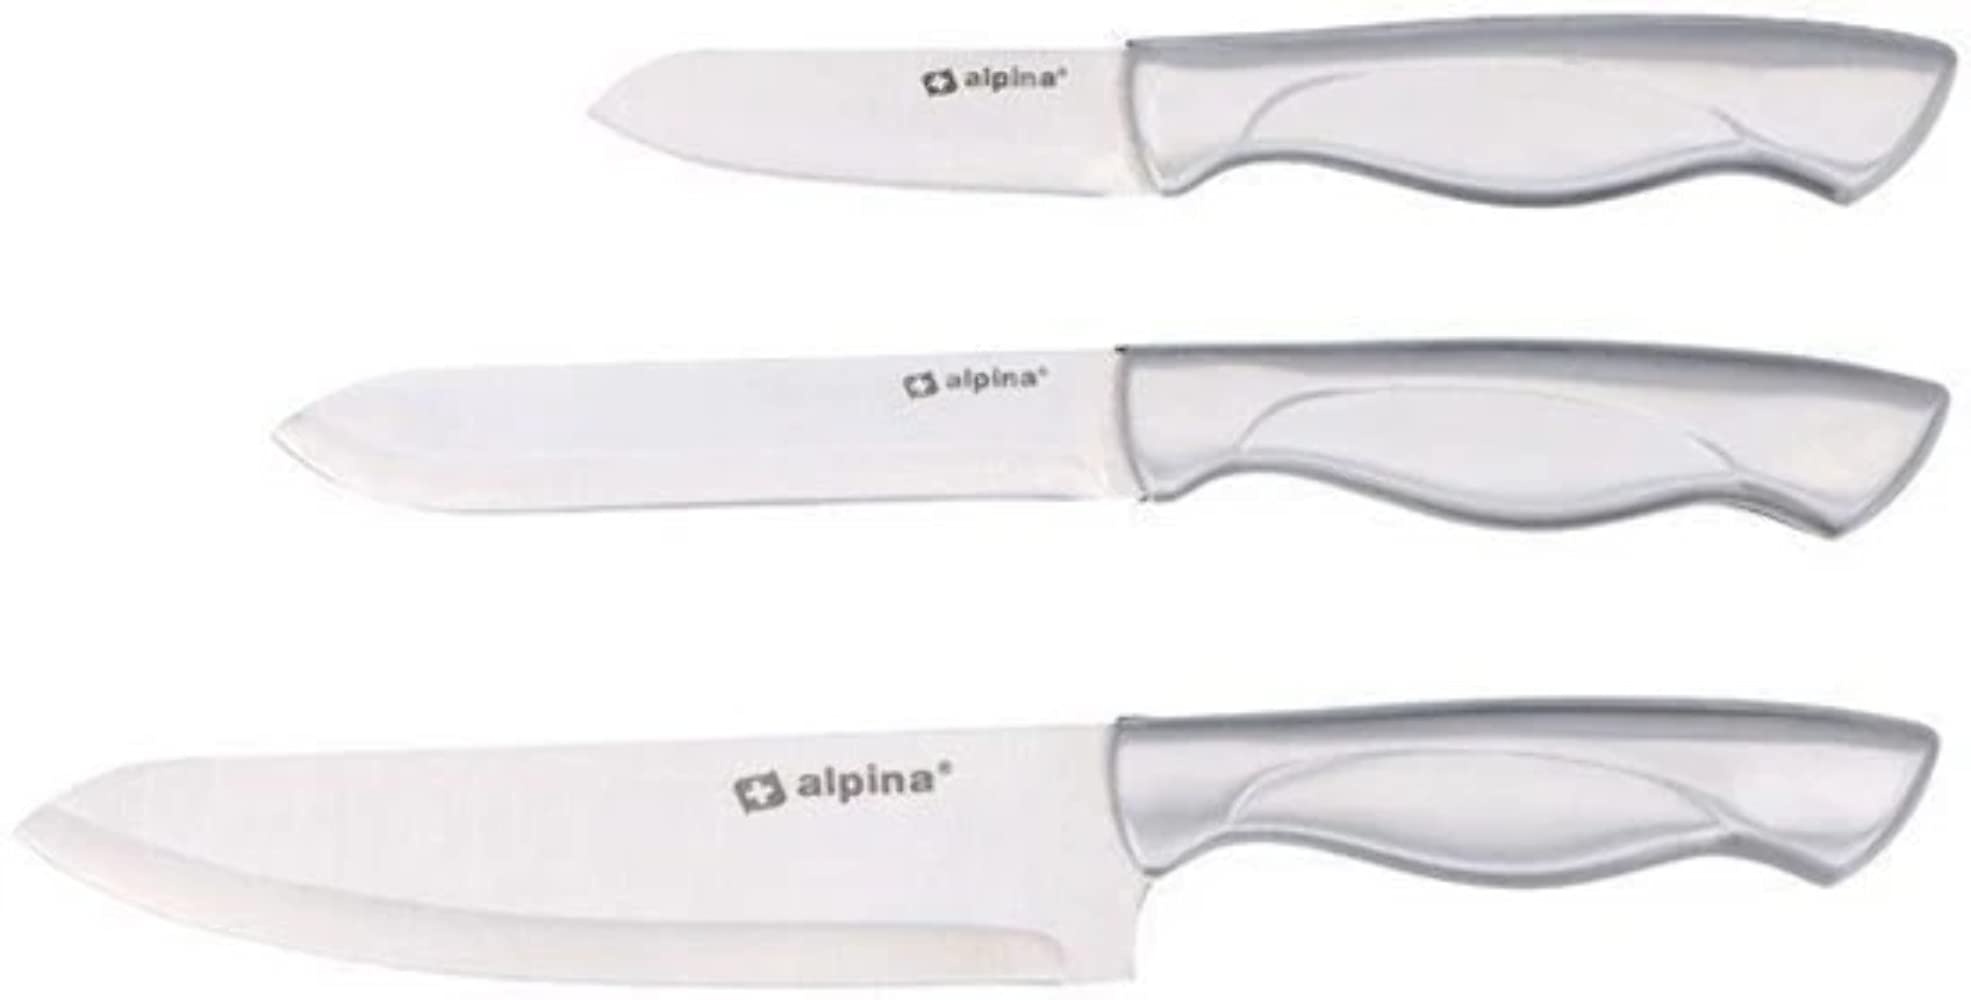 Alpina Küchenmesser Set 3tlg. 18,5/22,5/26 cm Edelstahl Messer Schneidemesser